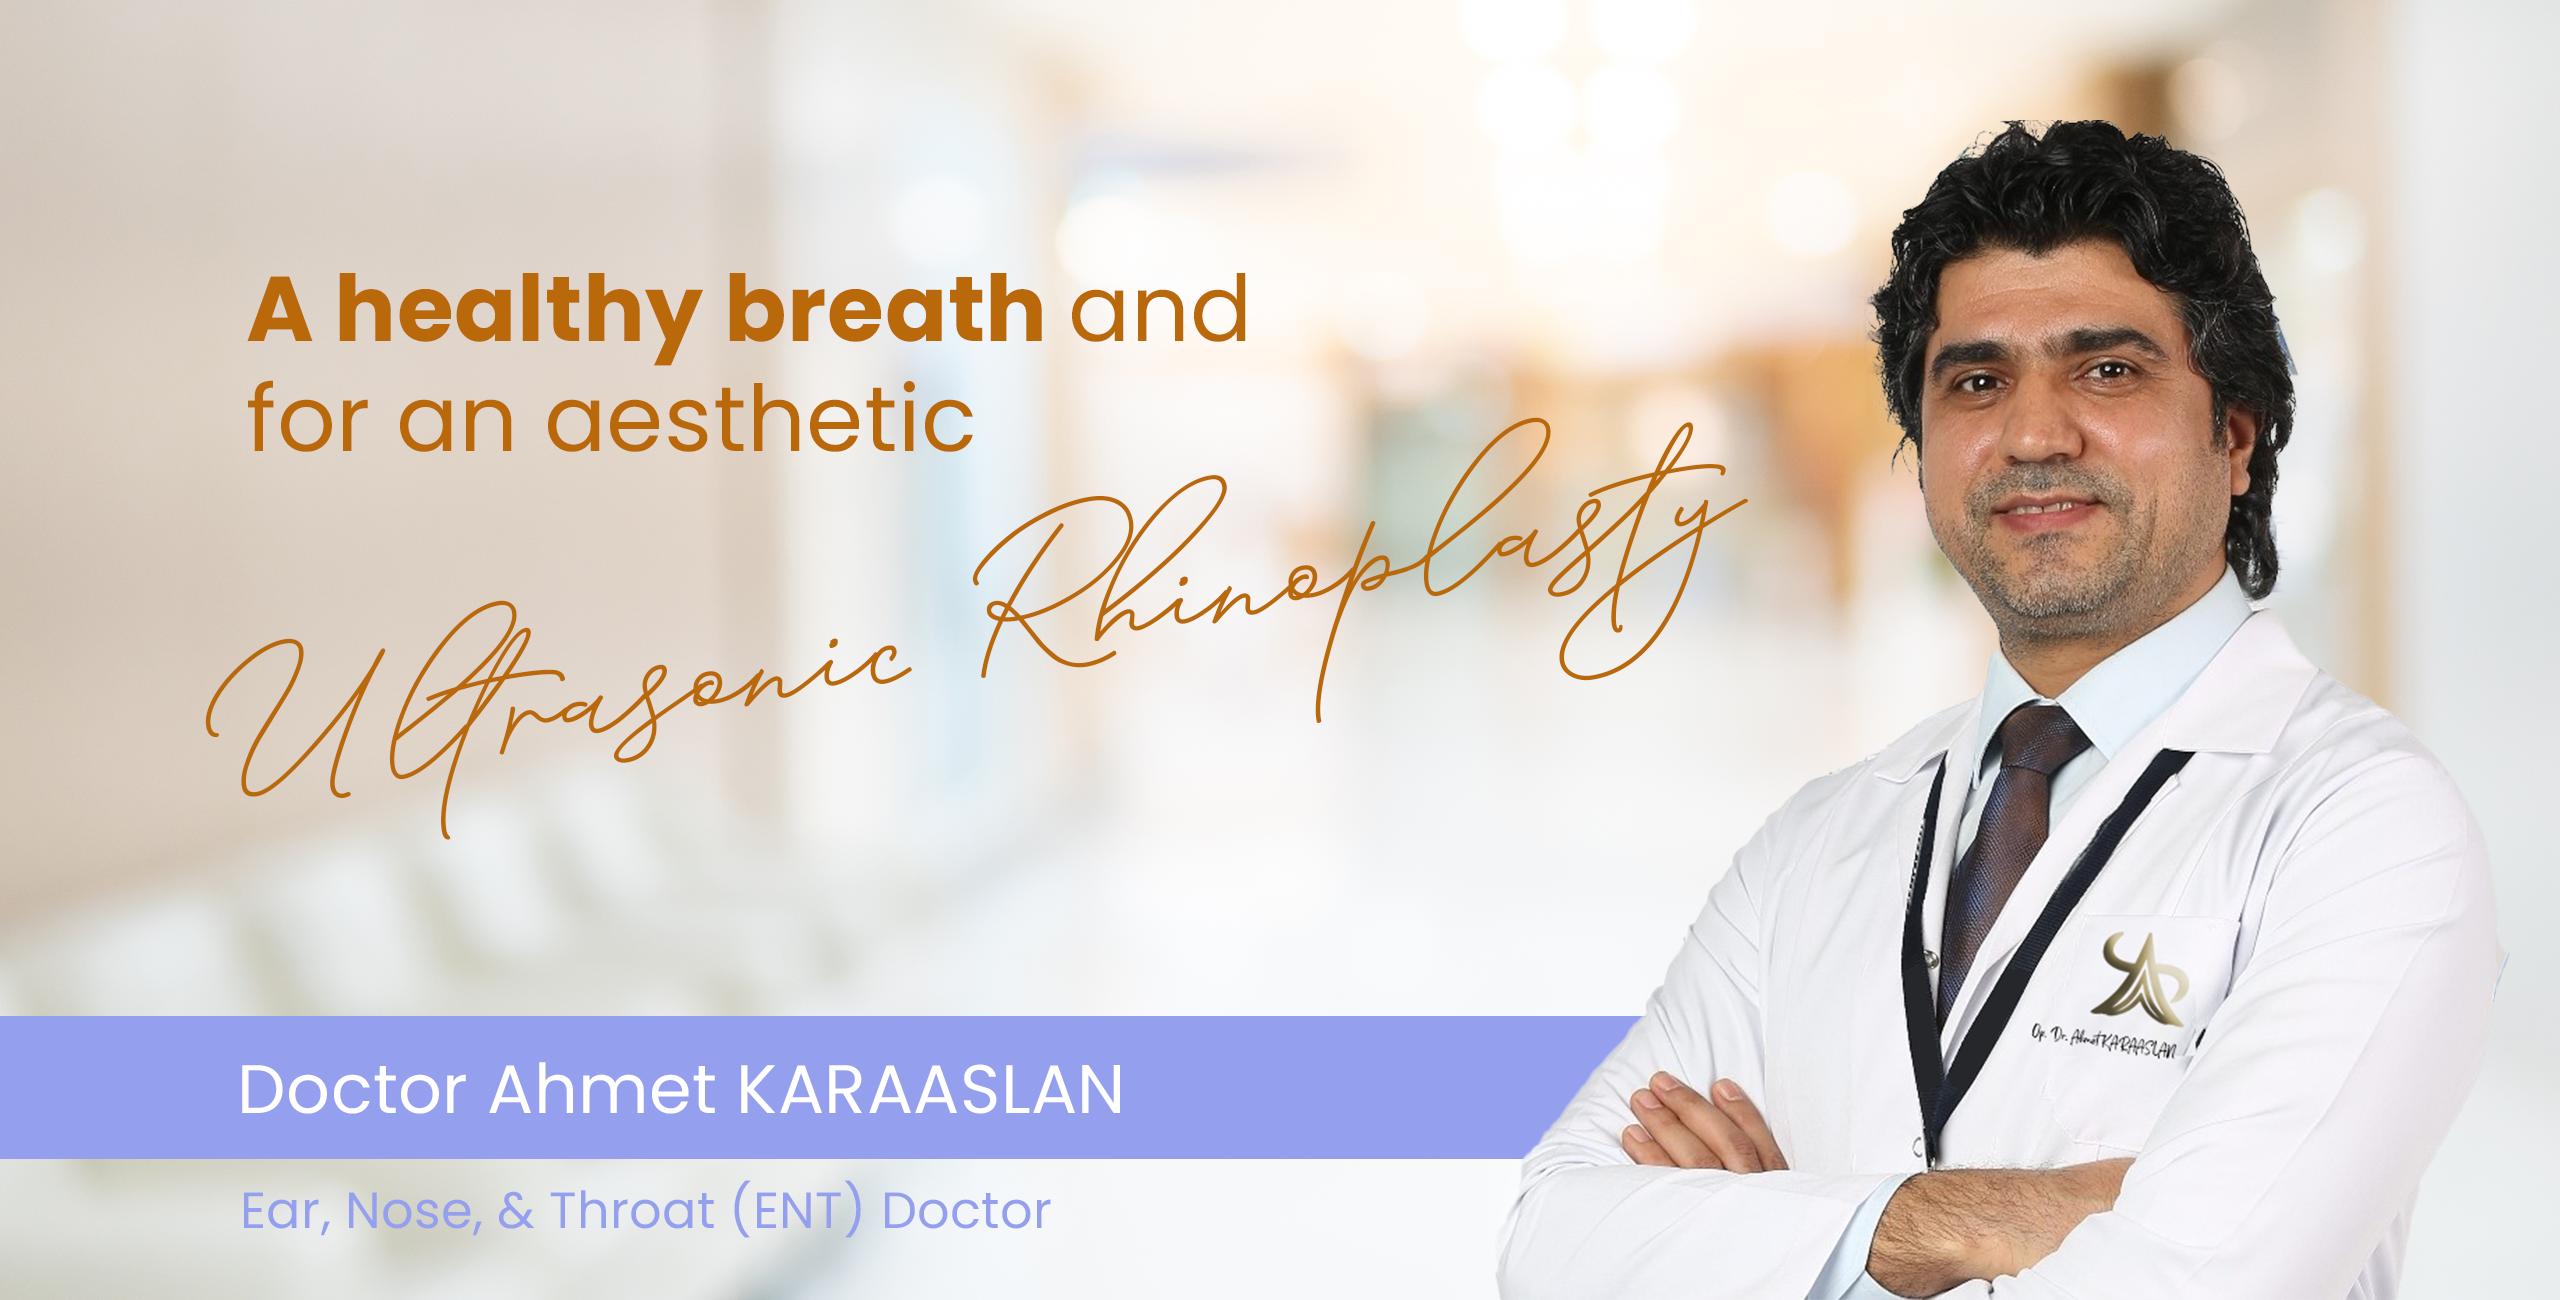 Ear, Nose, & Throat (ENT) Doctor Ahmet Karaaslan